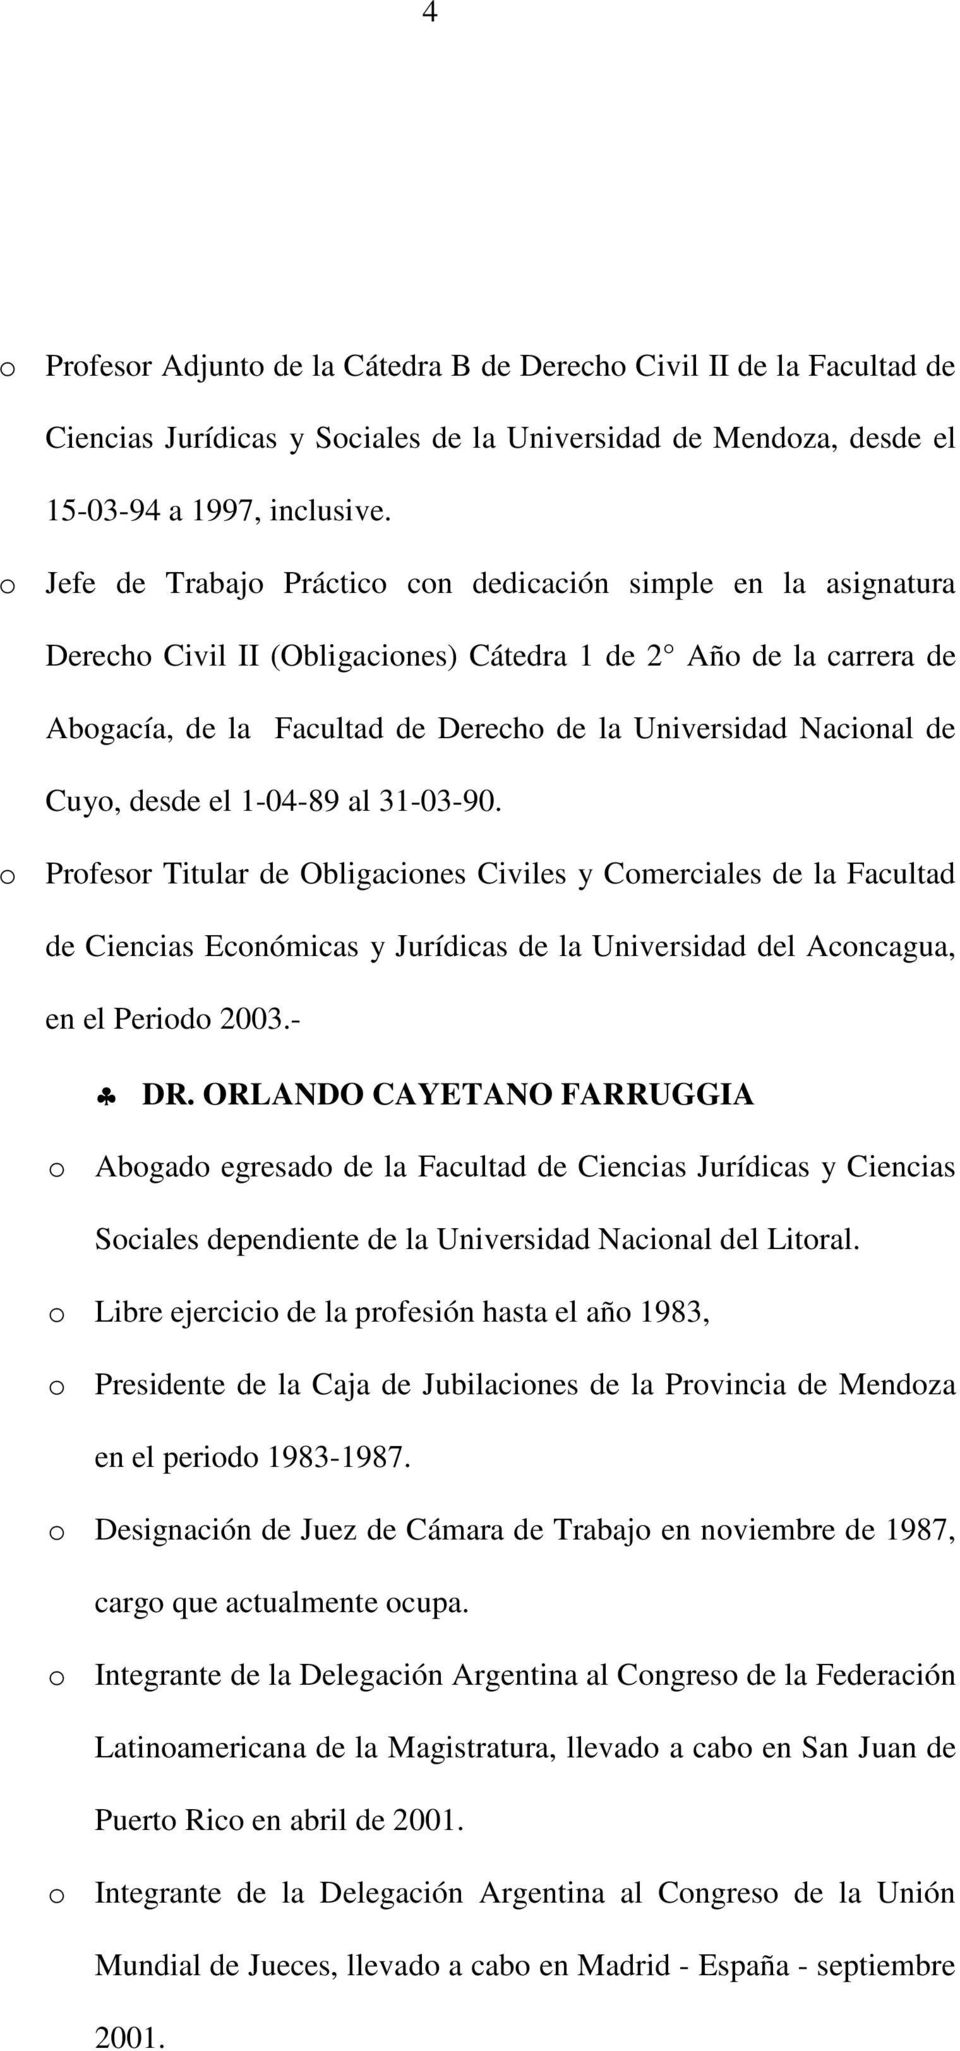 Cuyo, desde el 1-04-89 al 31-03-90. o Profesor Titular de Obligaciones Civiles y Comerciales de la Facultad de Ciencias Económicas y Jurídicas de la Universidad del Aconcagua, en el Periodo 2003.- DR.